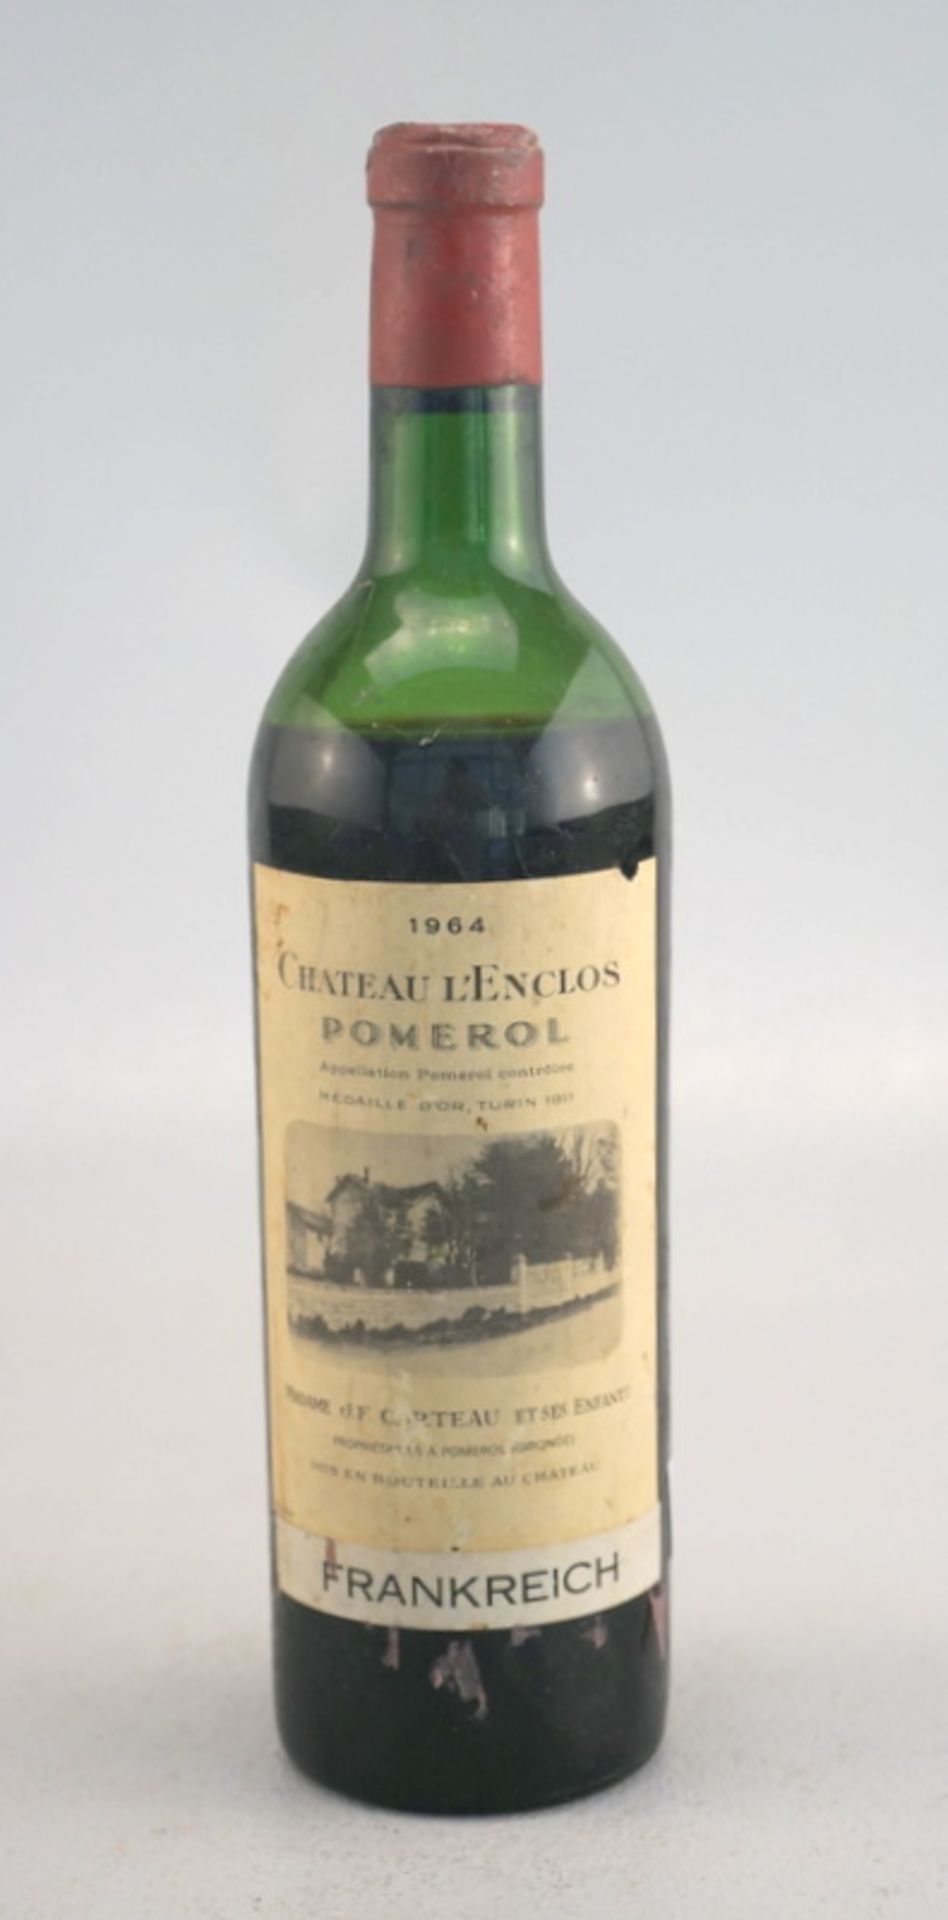 Chateau L'Enclos Grand Vin Pomerol Bordeaux 1964